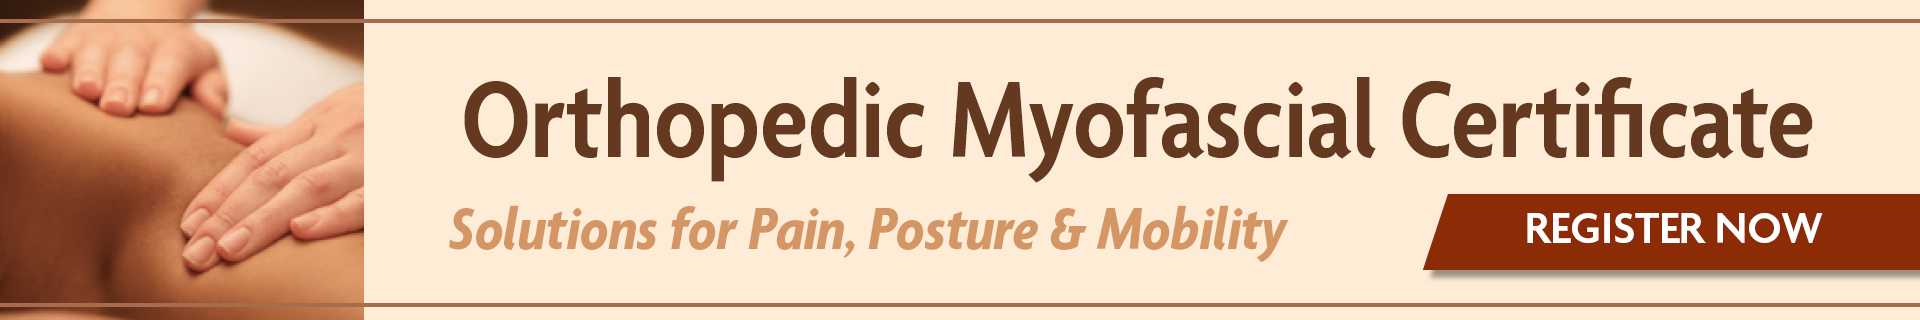 Orthopedic Myofascial Certificate Full